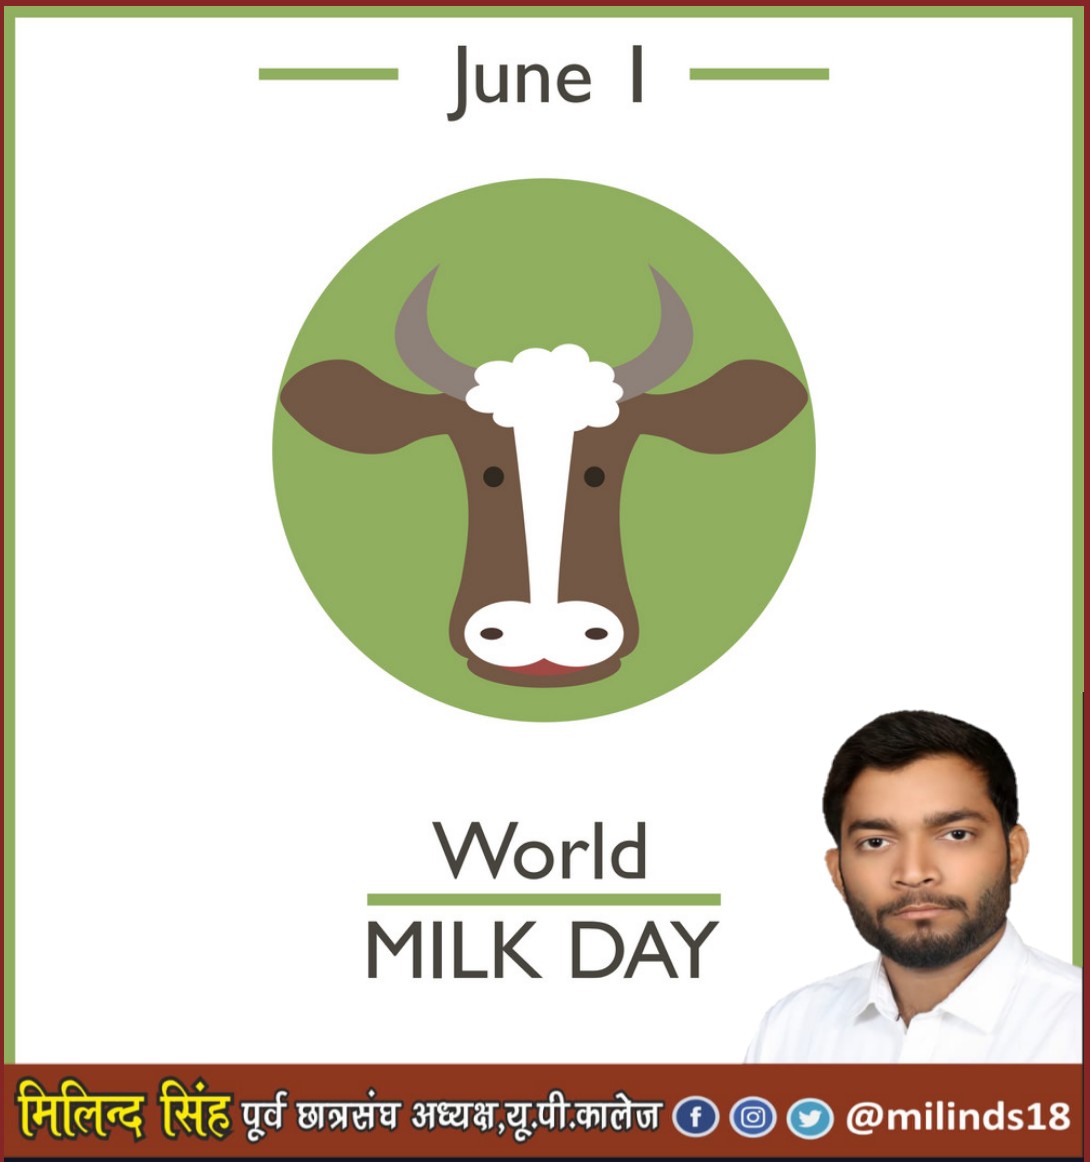 दूध का कर्ज वो इस तरह चुकाता है 
दुधारू गाय को ही वो घास खिलाता है।   #HappyWorldMilkDay